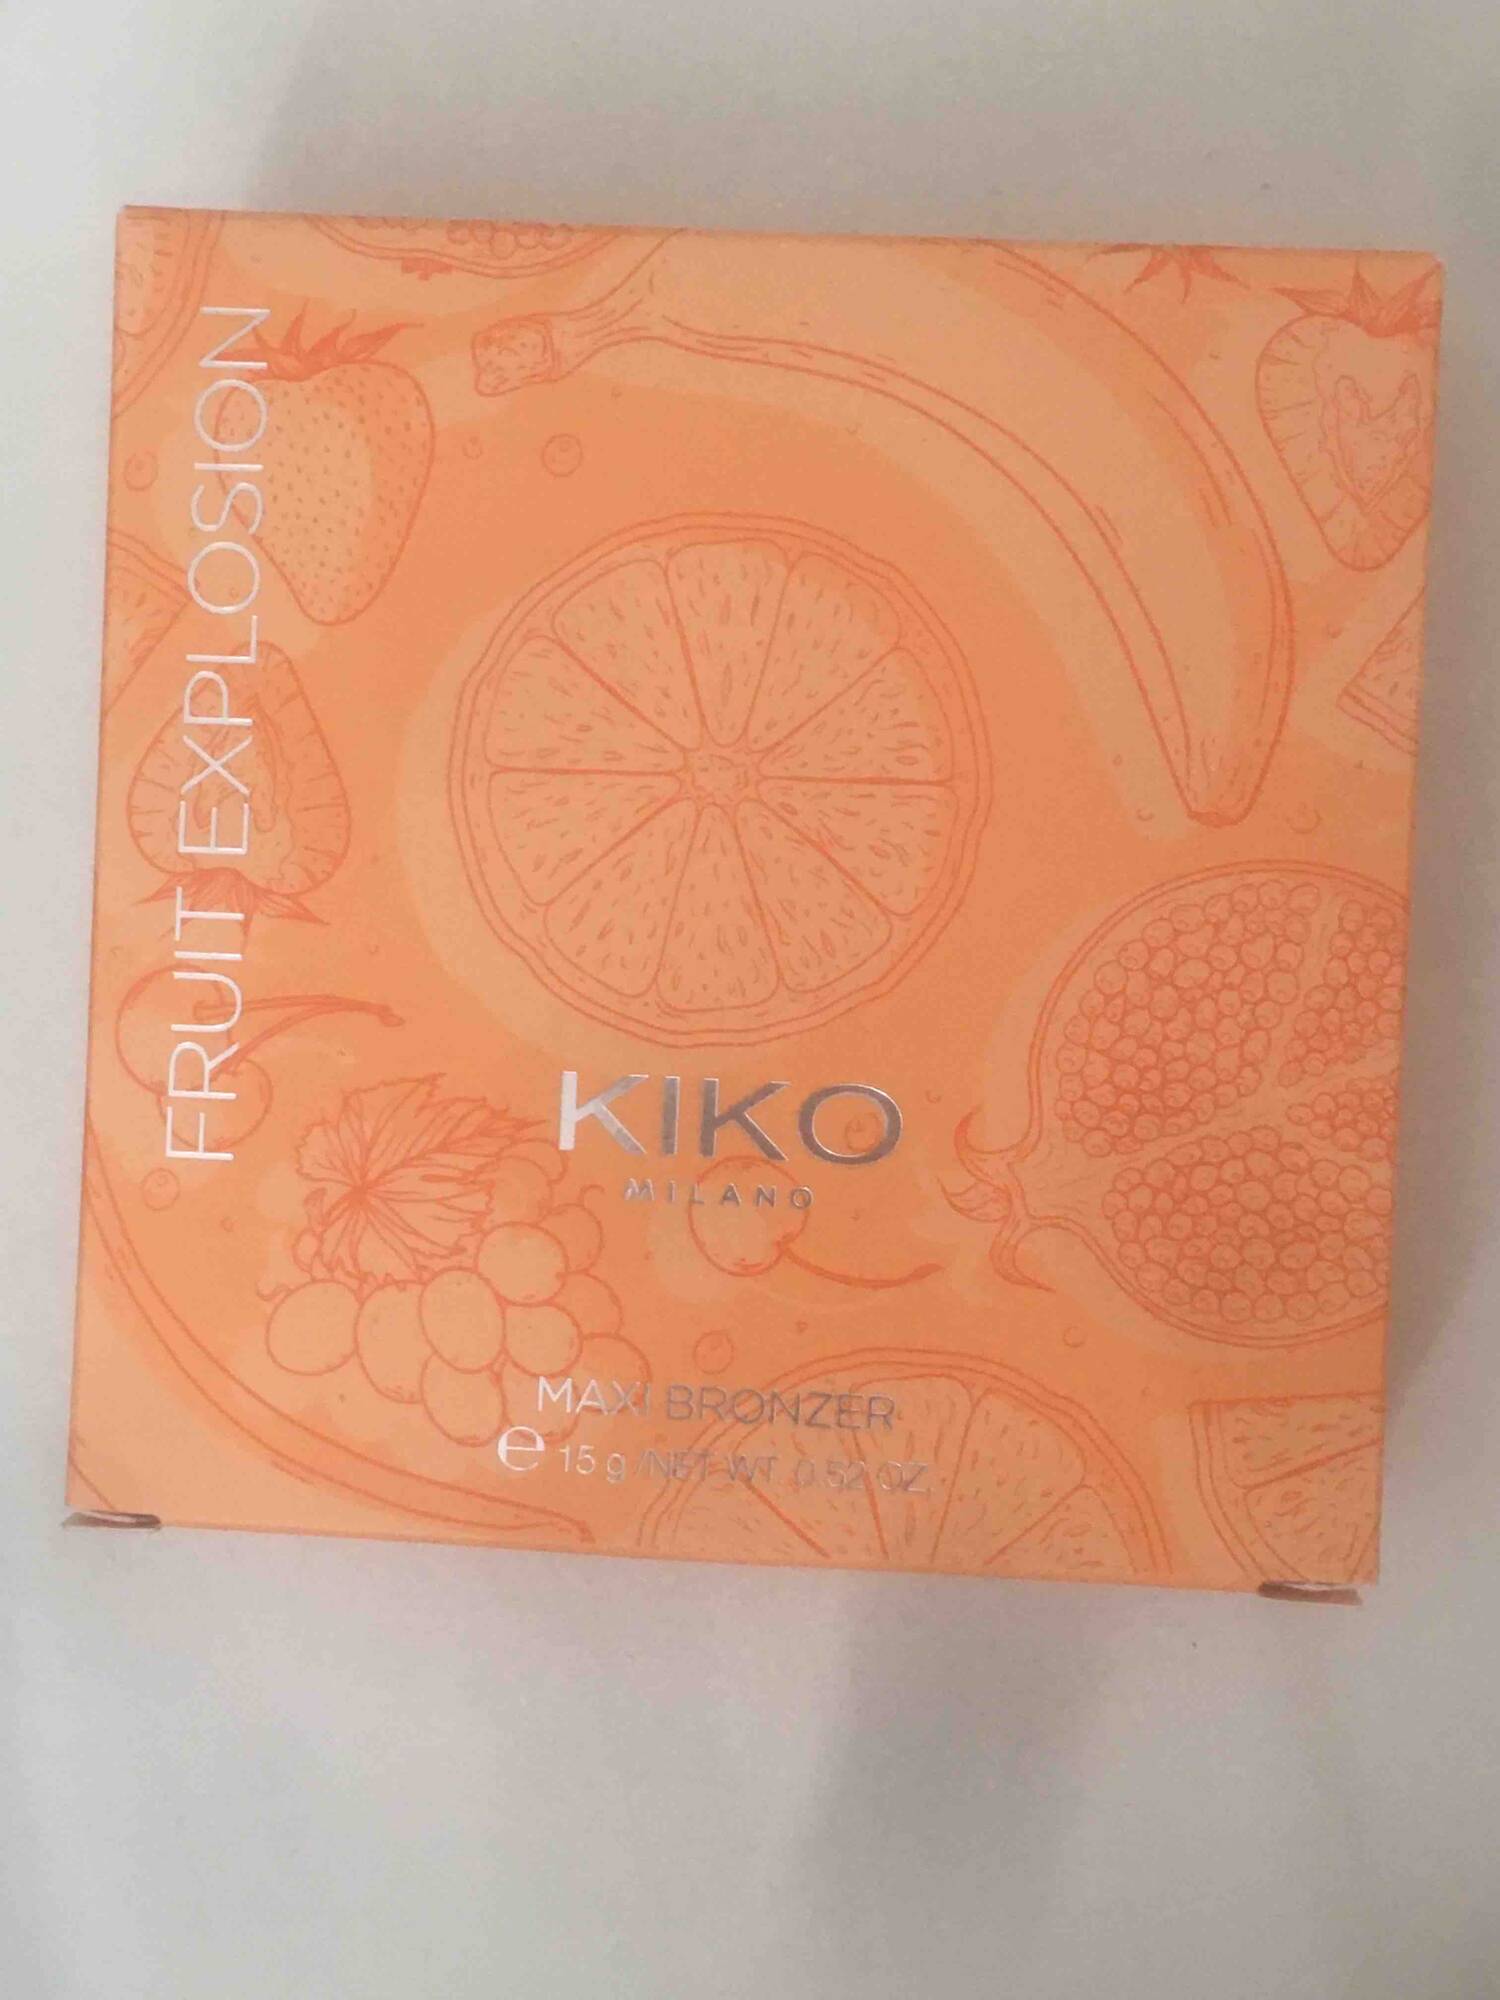 KIKO - Fruit explosion - Maxi bronzer